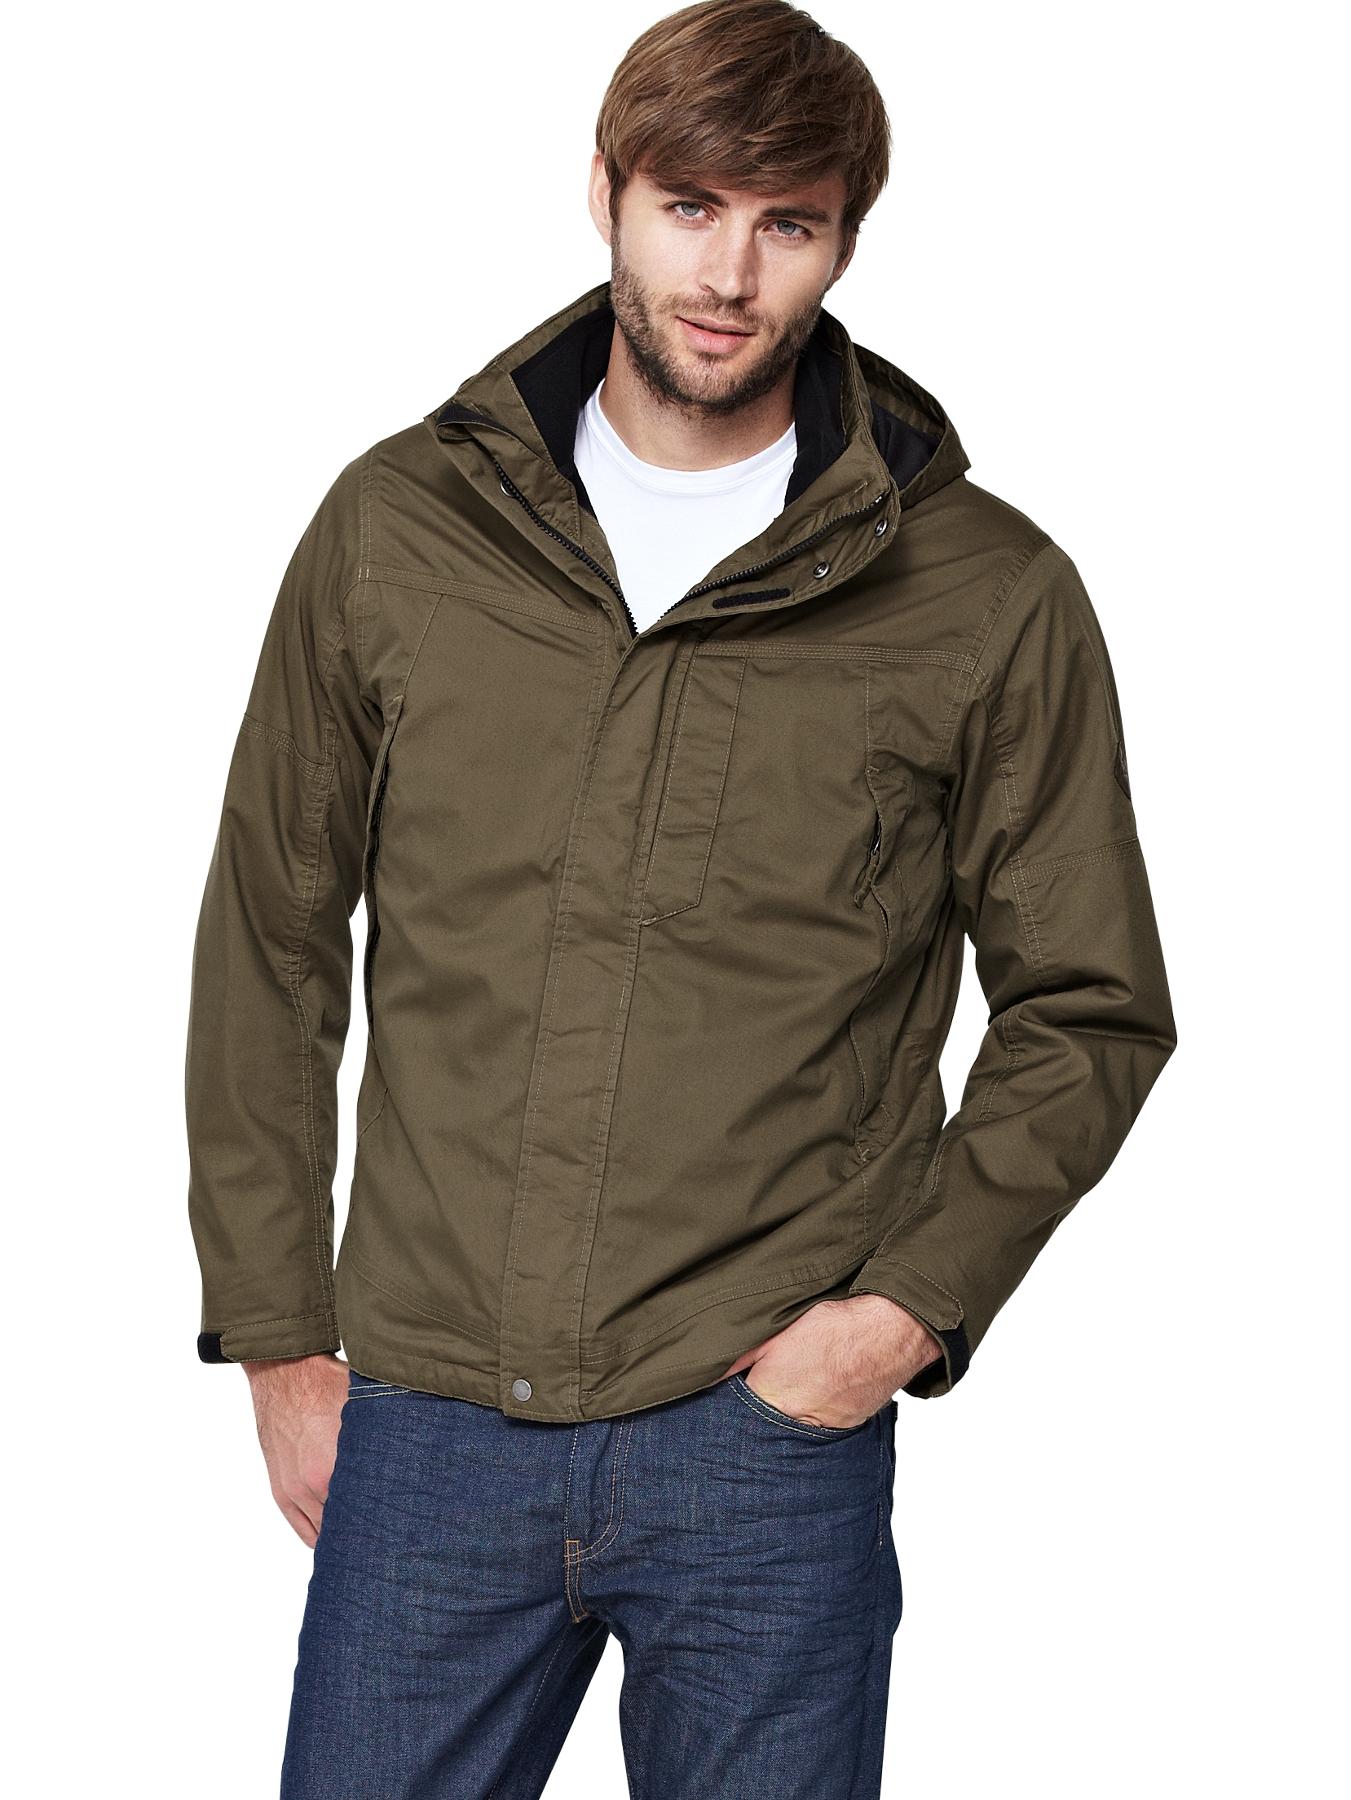 Timberland Mens Benton 3-in-1 jacket | littlewoodsireland.ie